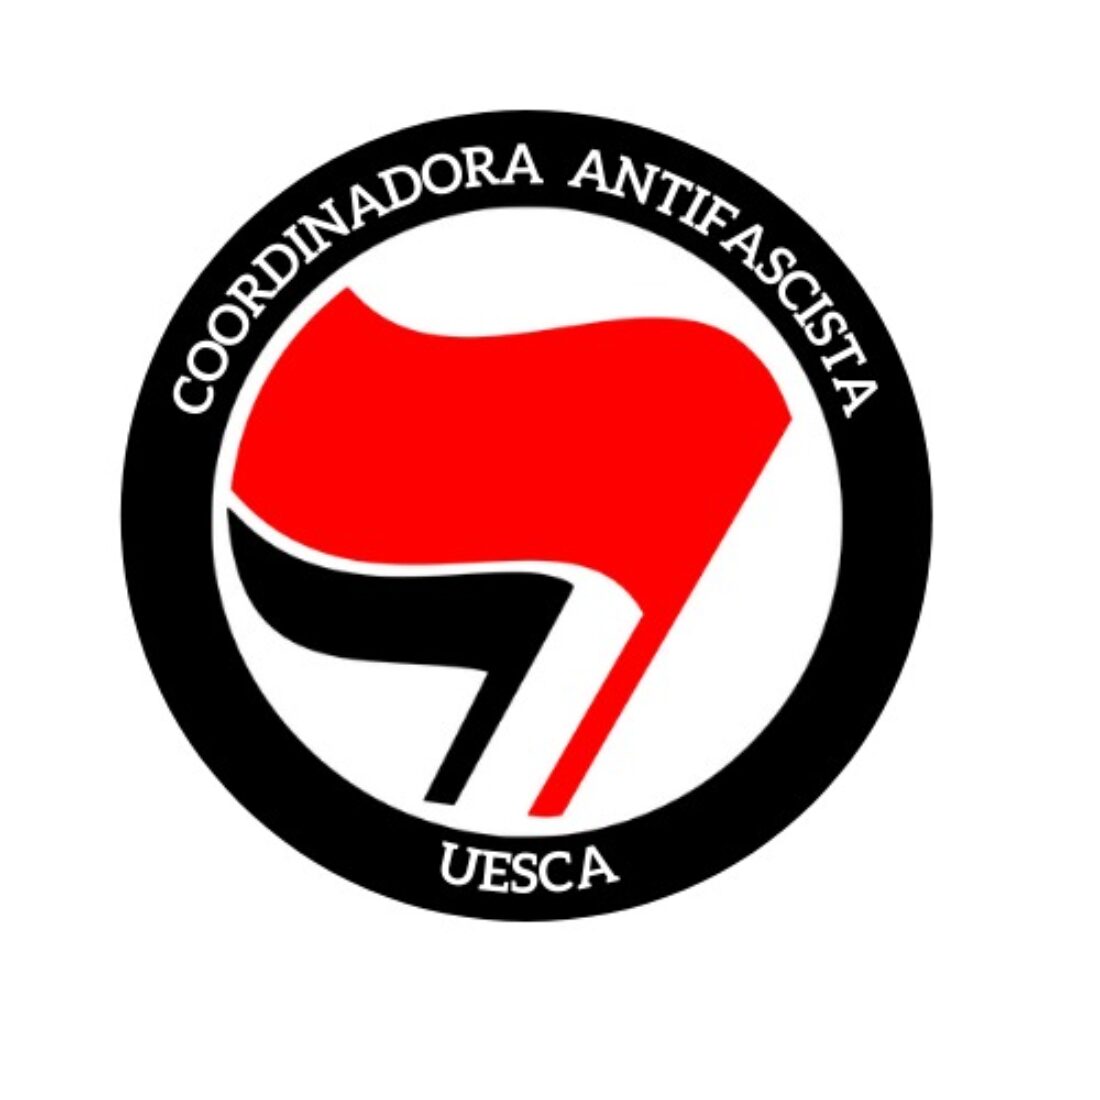 Huesca saldrá a la calle ante el auge de la extrema derecha